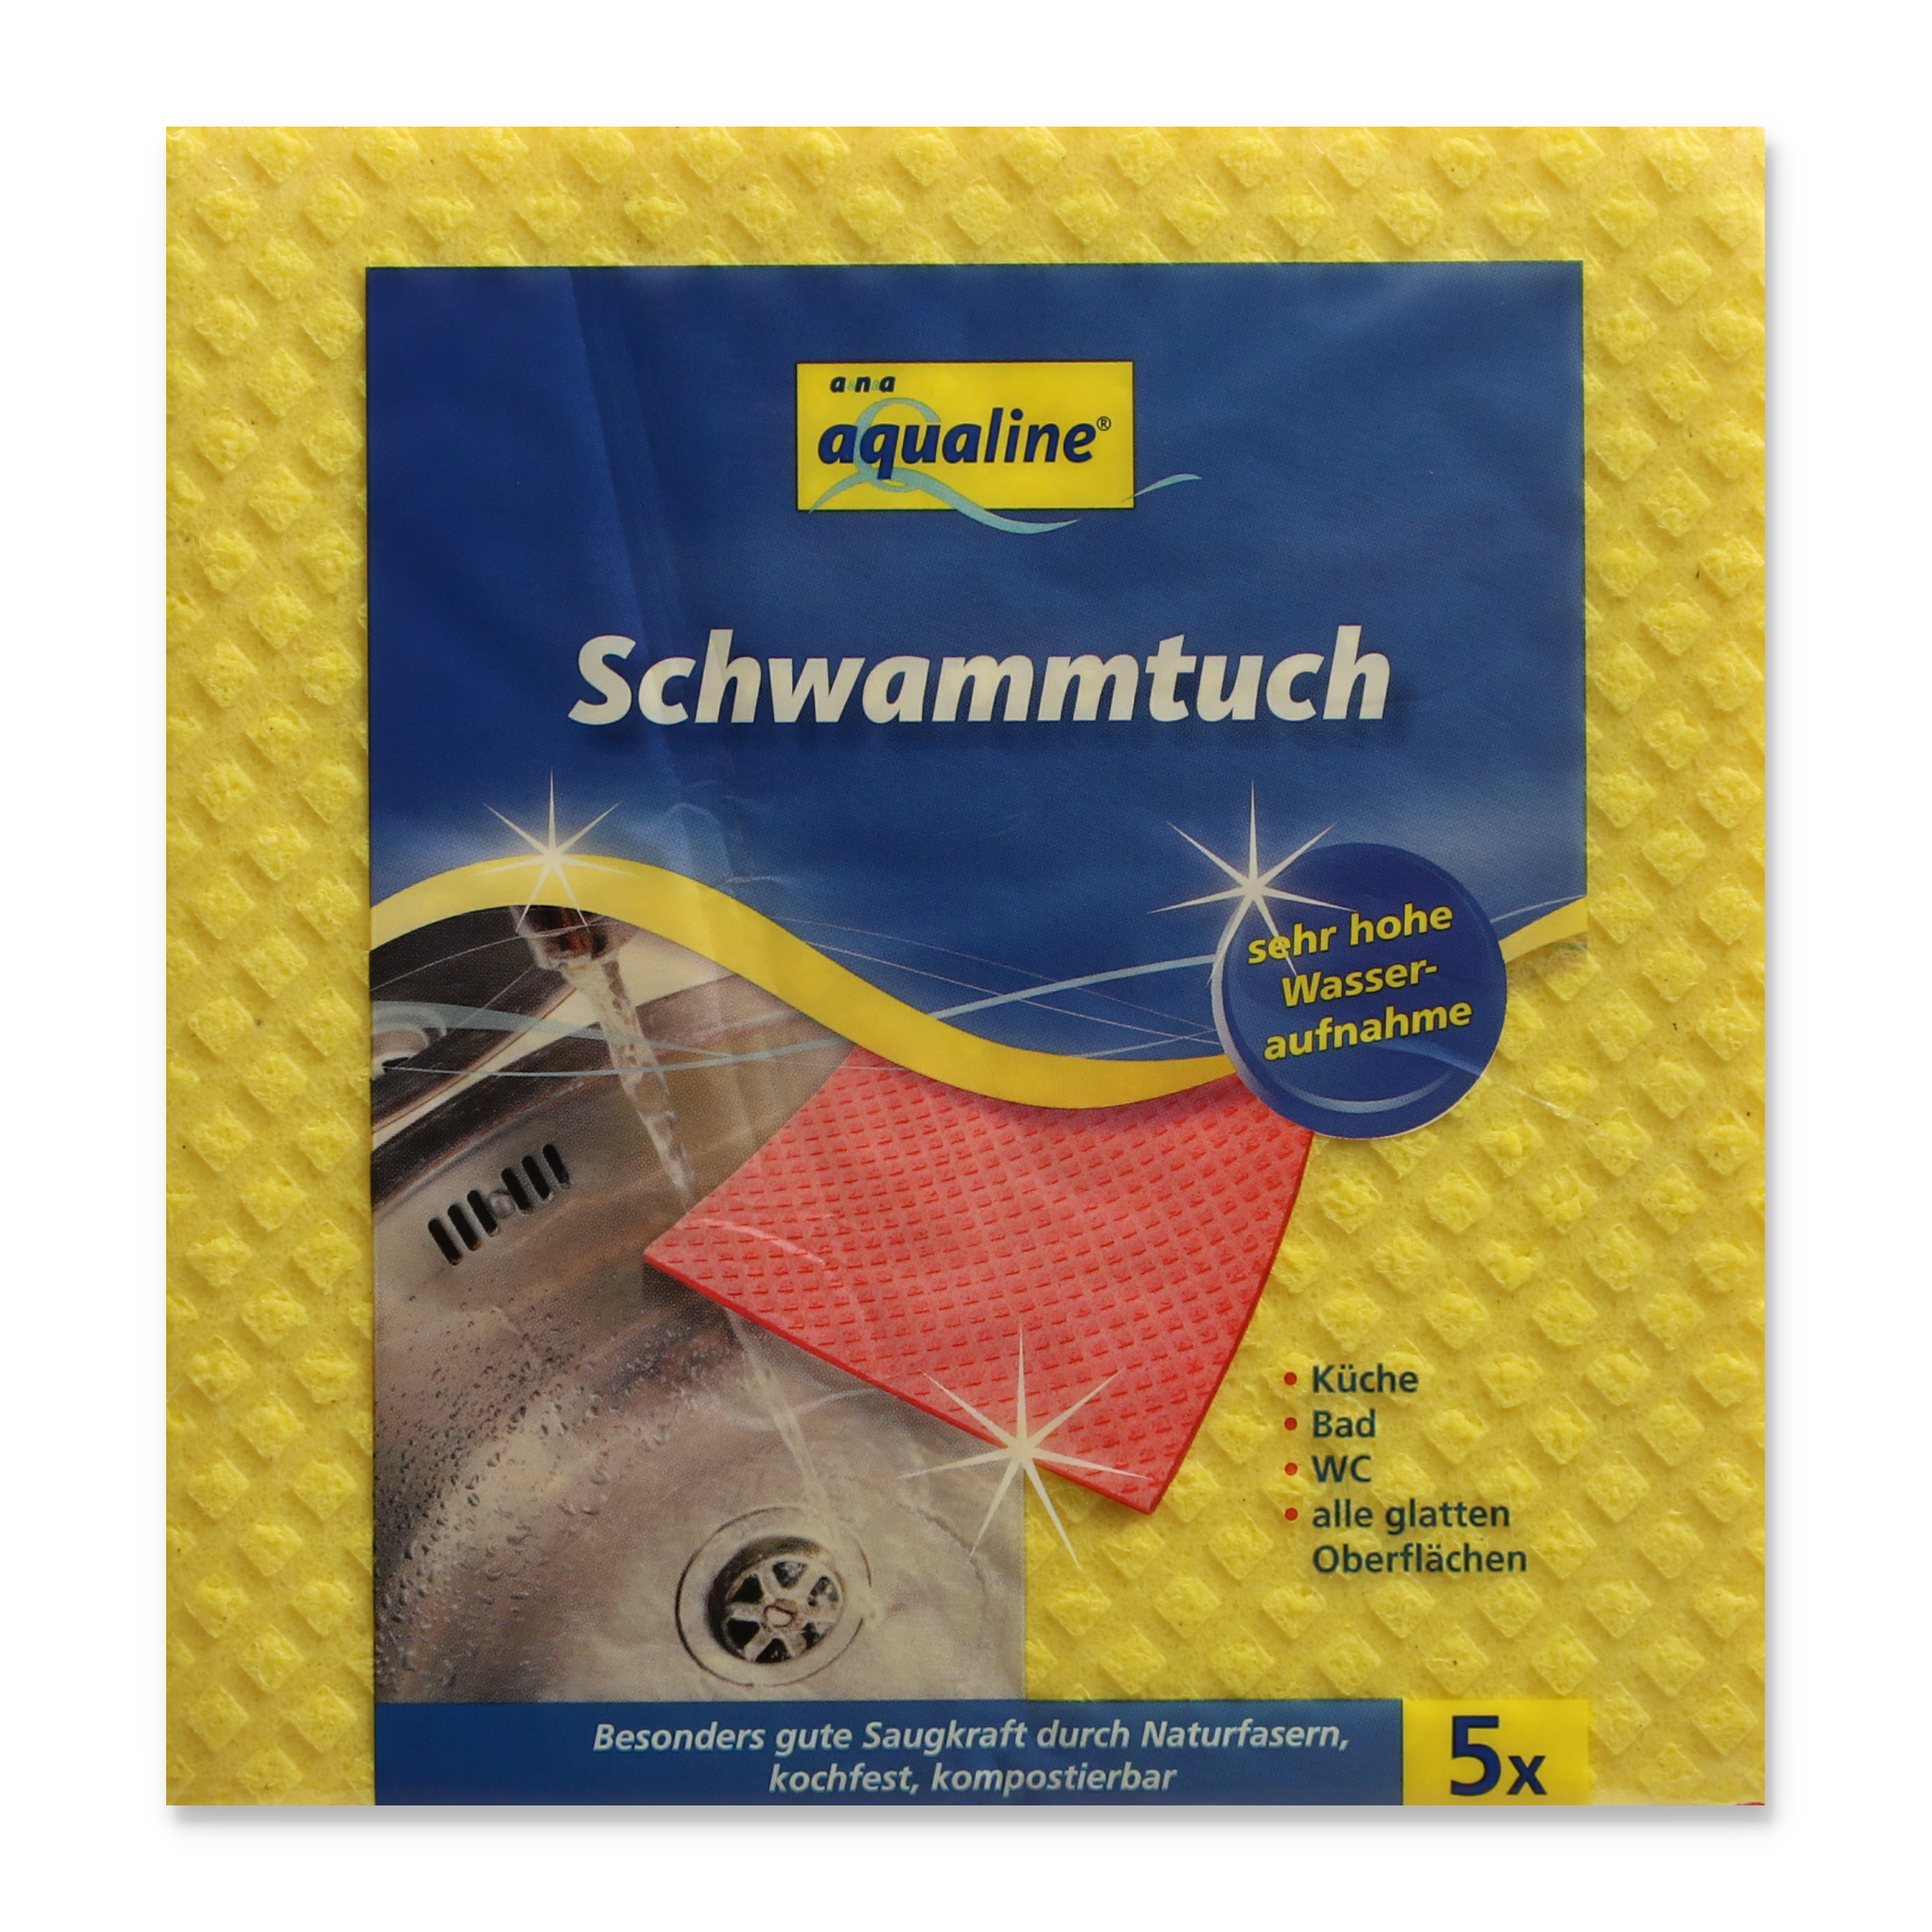 Schwammtuch 'Aqualine' 5 Stück + product picture